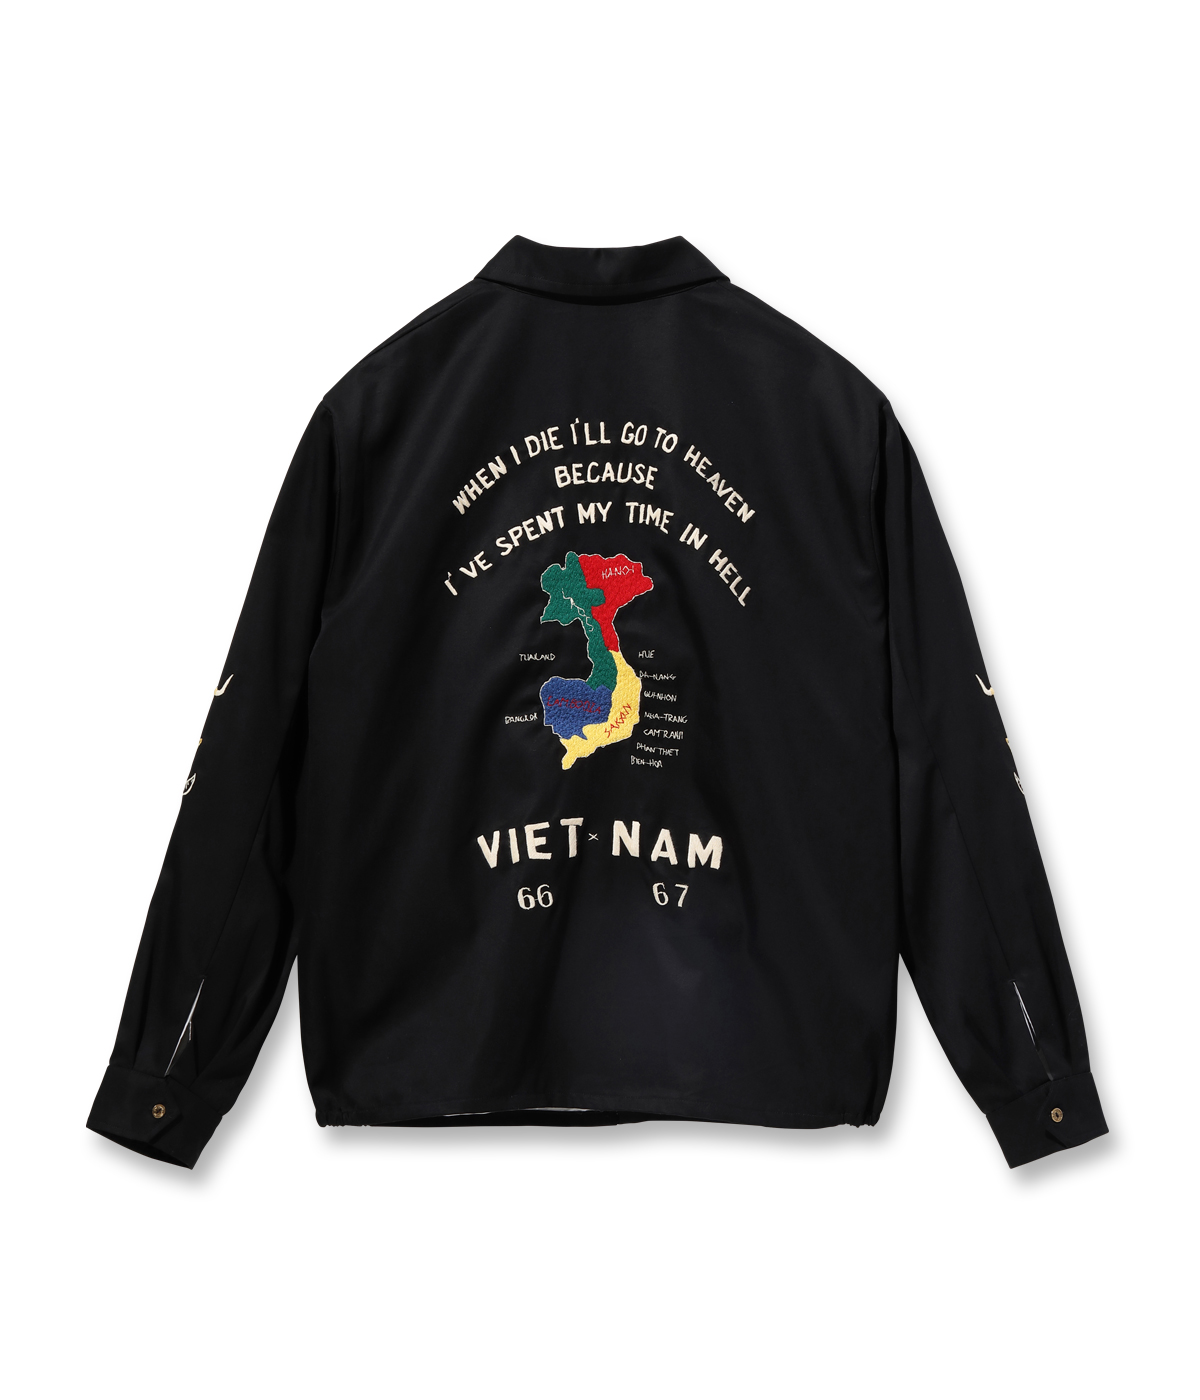 Lot No. TT15493 / Mid 1960s Style Cotton Vietnam Jacket “VIETNAM 